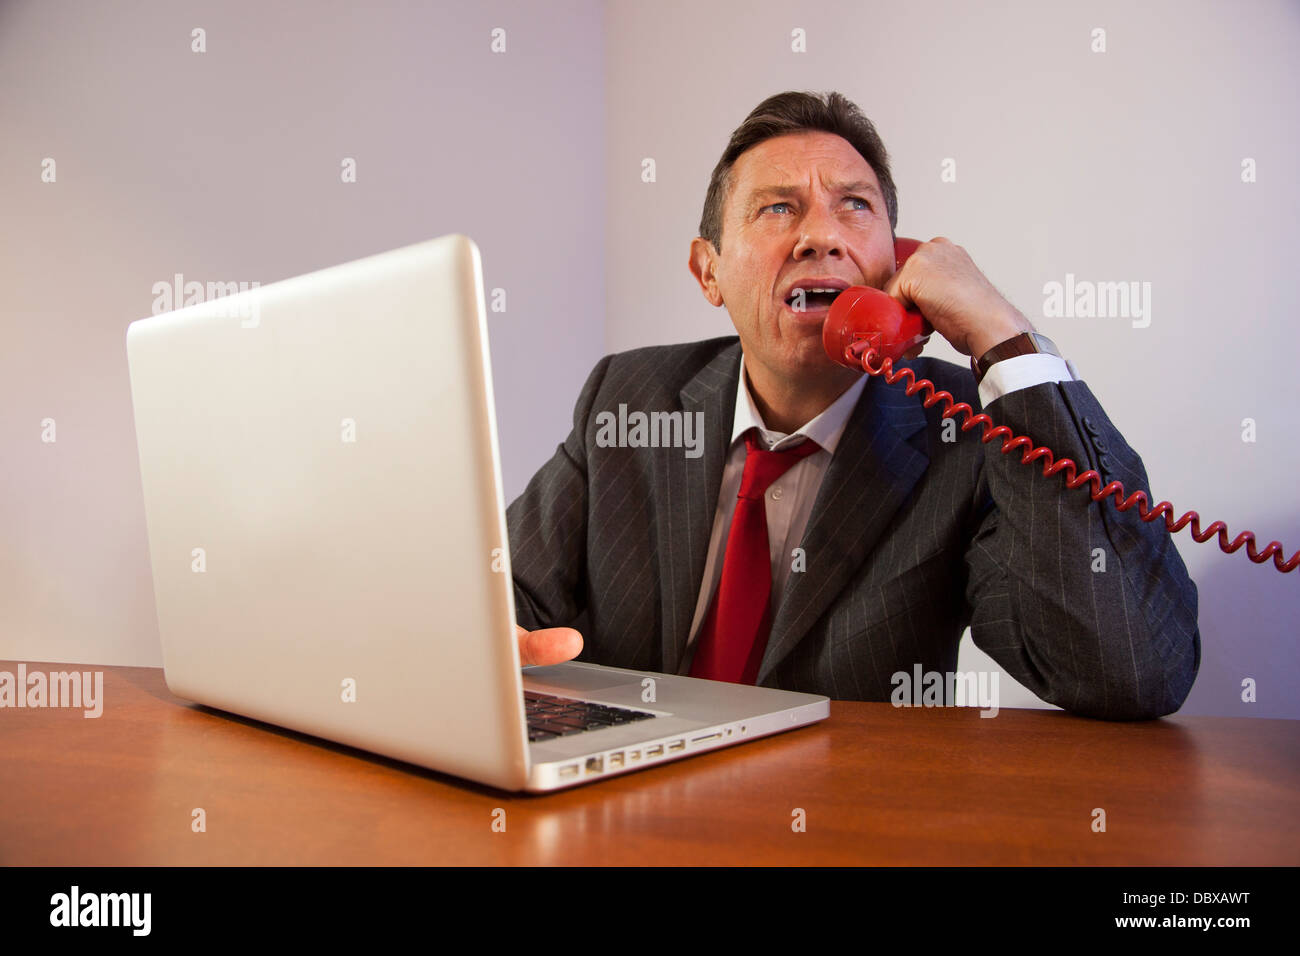 Angry Man indossa una tuta, gridando verso il basso un telefono rosso seduti davanti a un computer portatile su una scrivania. Foto Stock